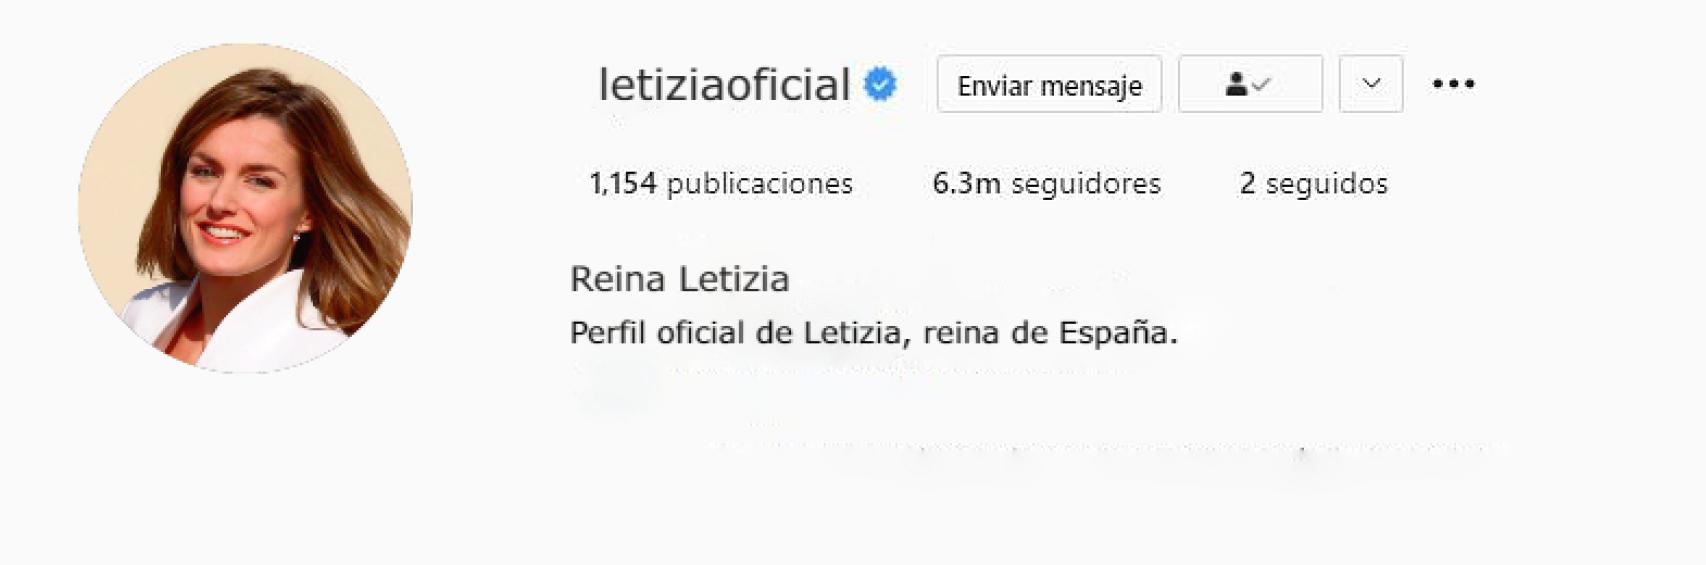 Recreación del perfil de Instagram de la reina Letizia.